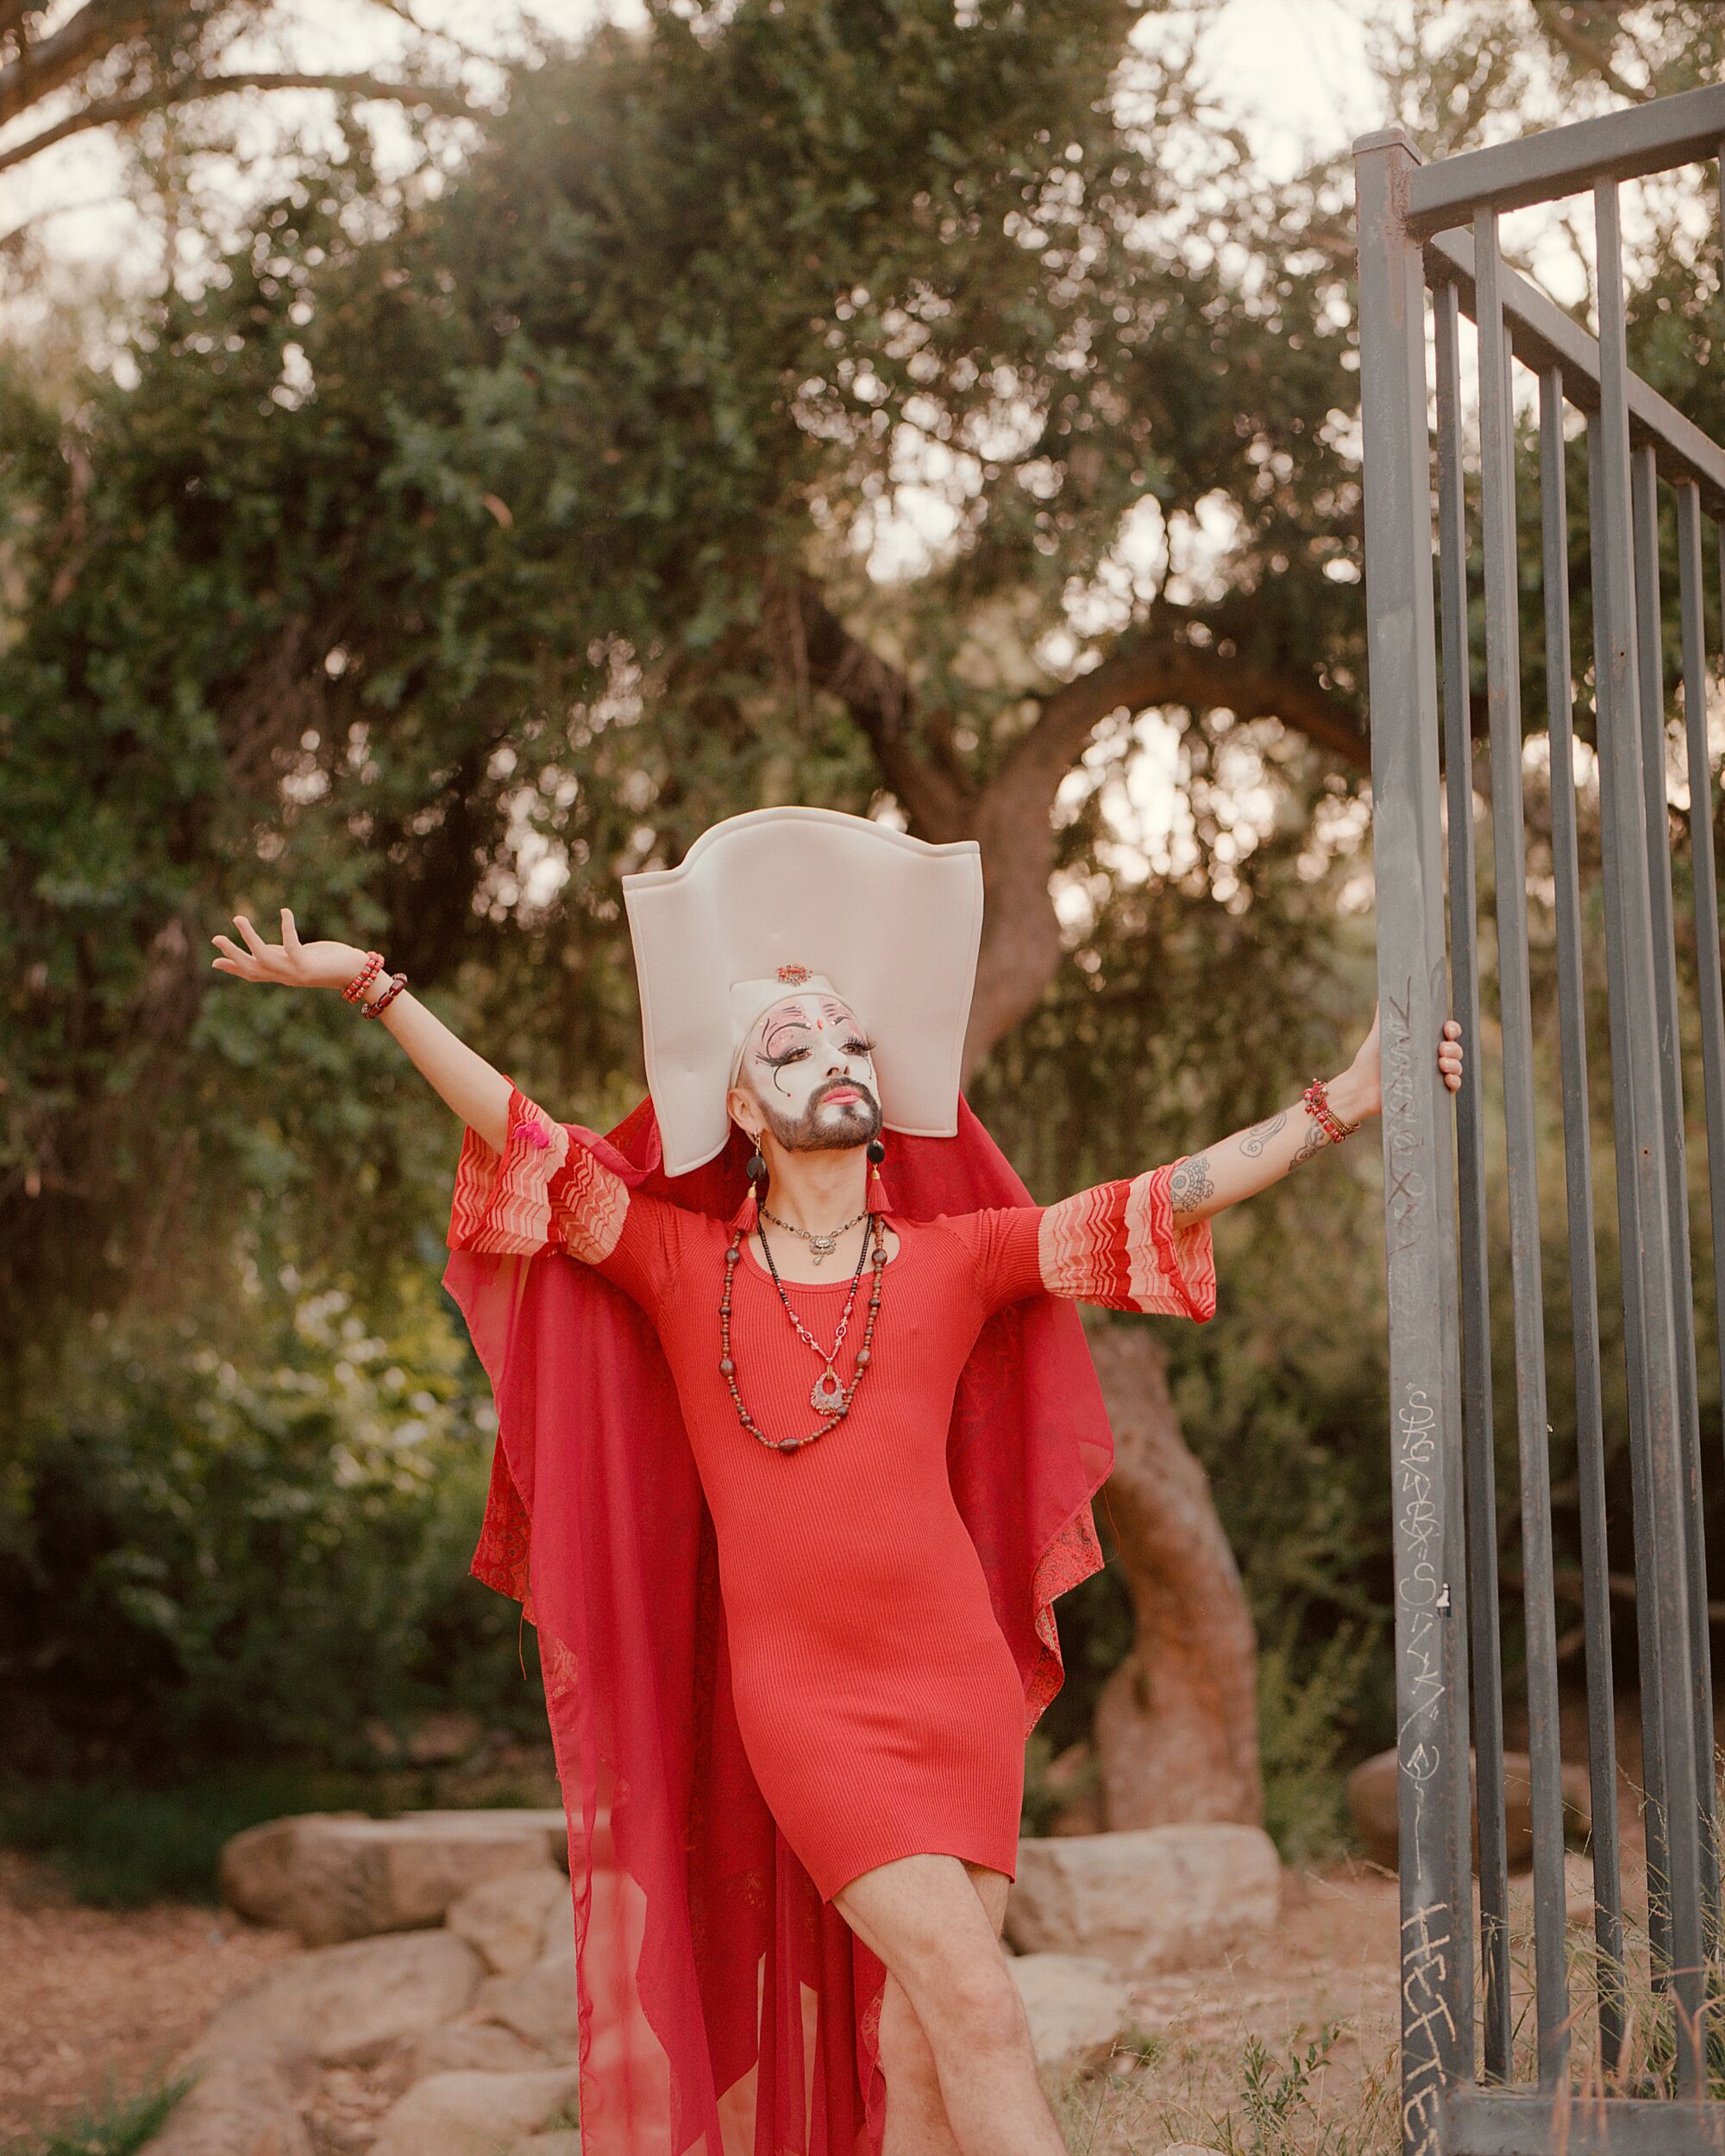 Eine Drag Queen in rotem Kleid, Bart, Gesichtsbemalung und kunstvollem Wimpole-Kopfschmuck posiert im Freien.